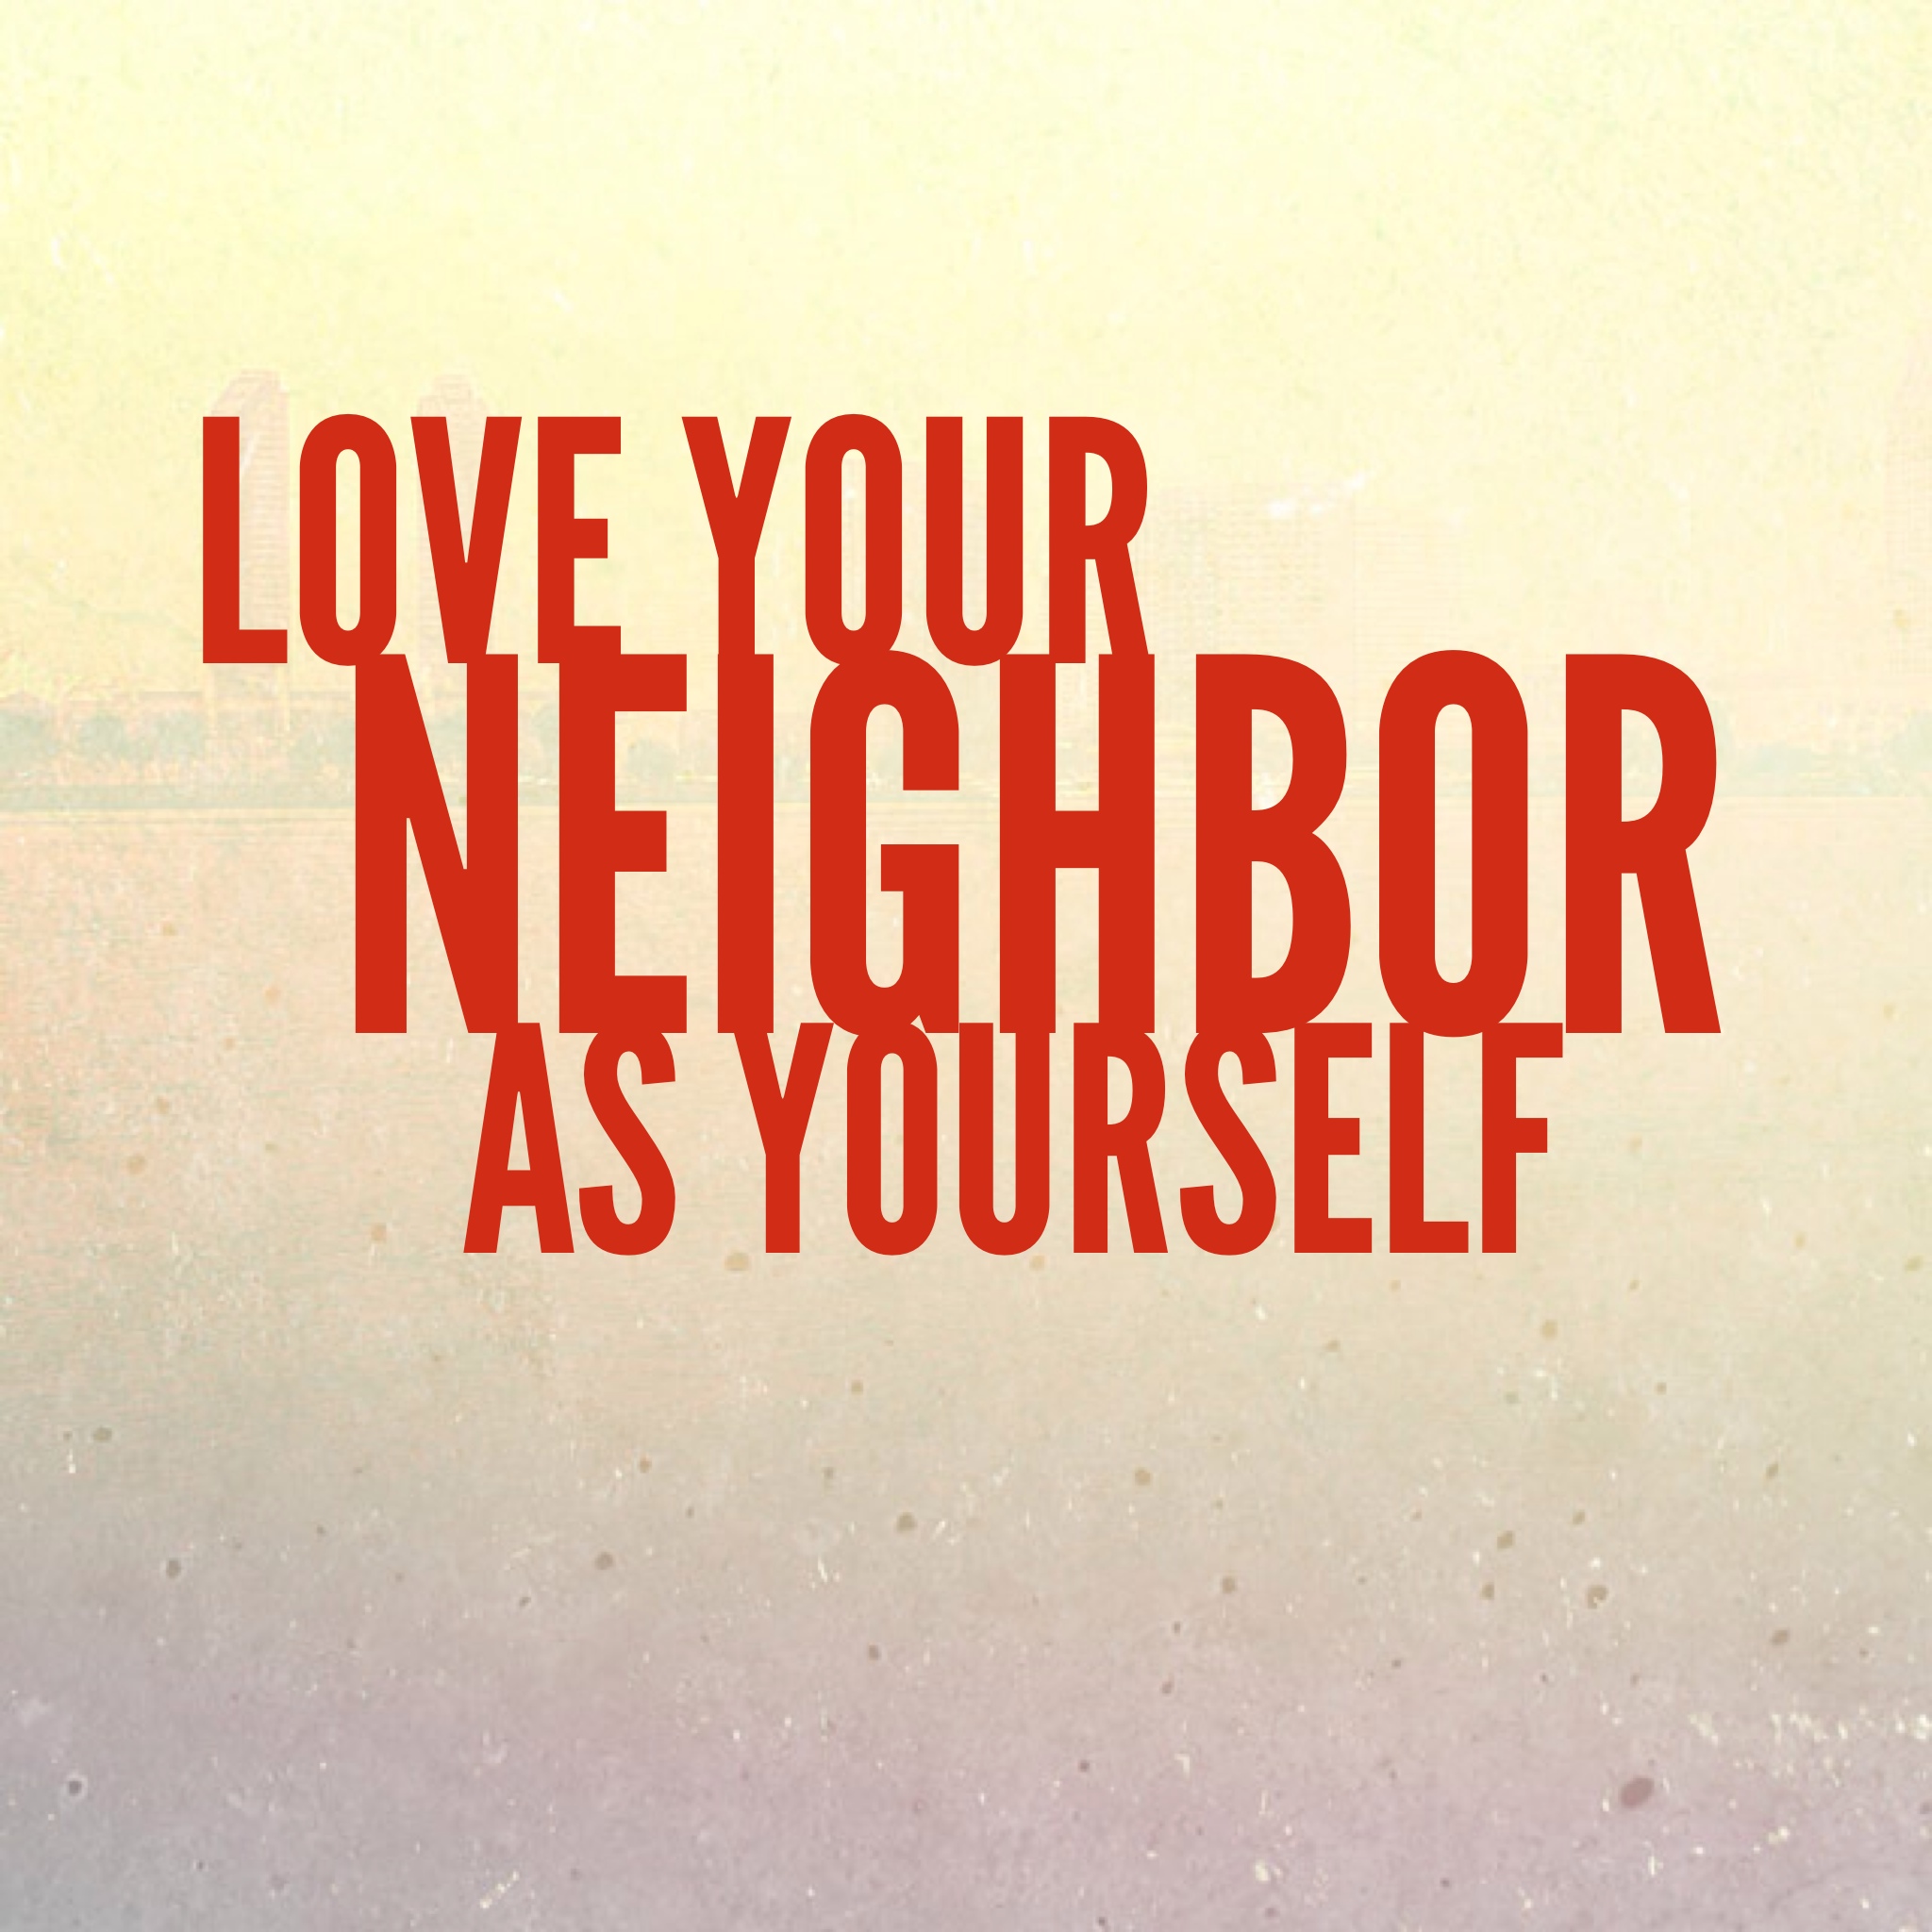 Mean Neighbor Quotes. QuotesGram